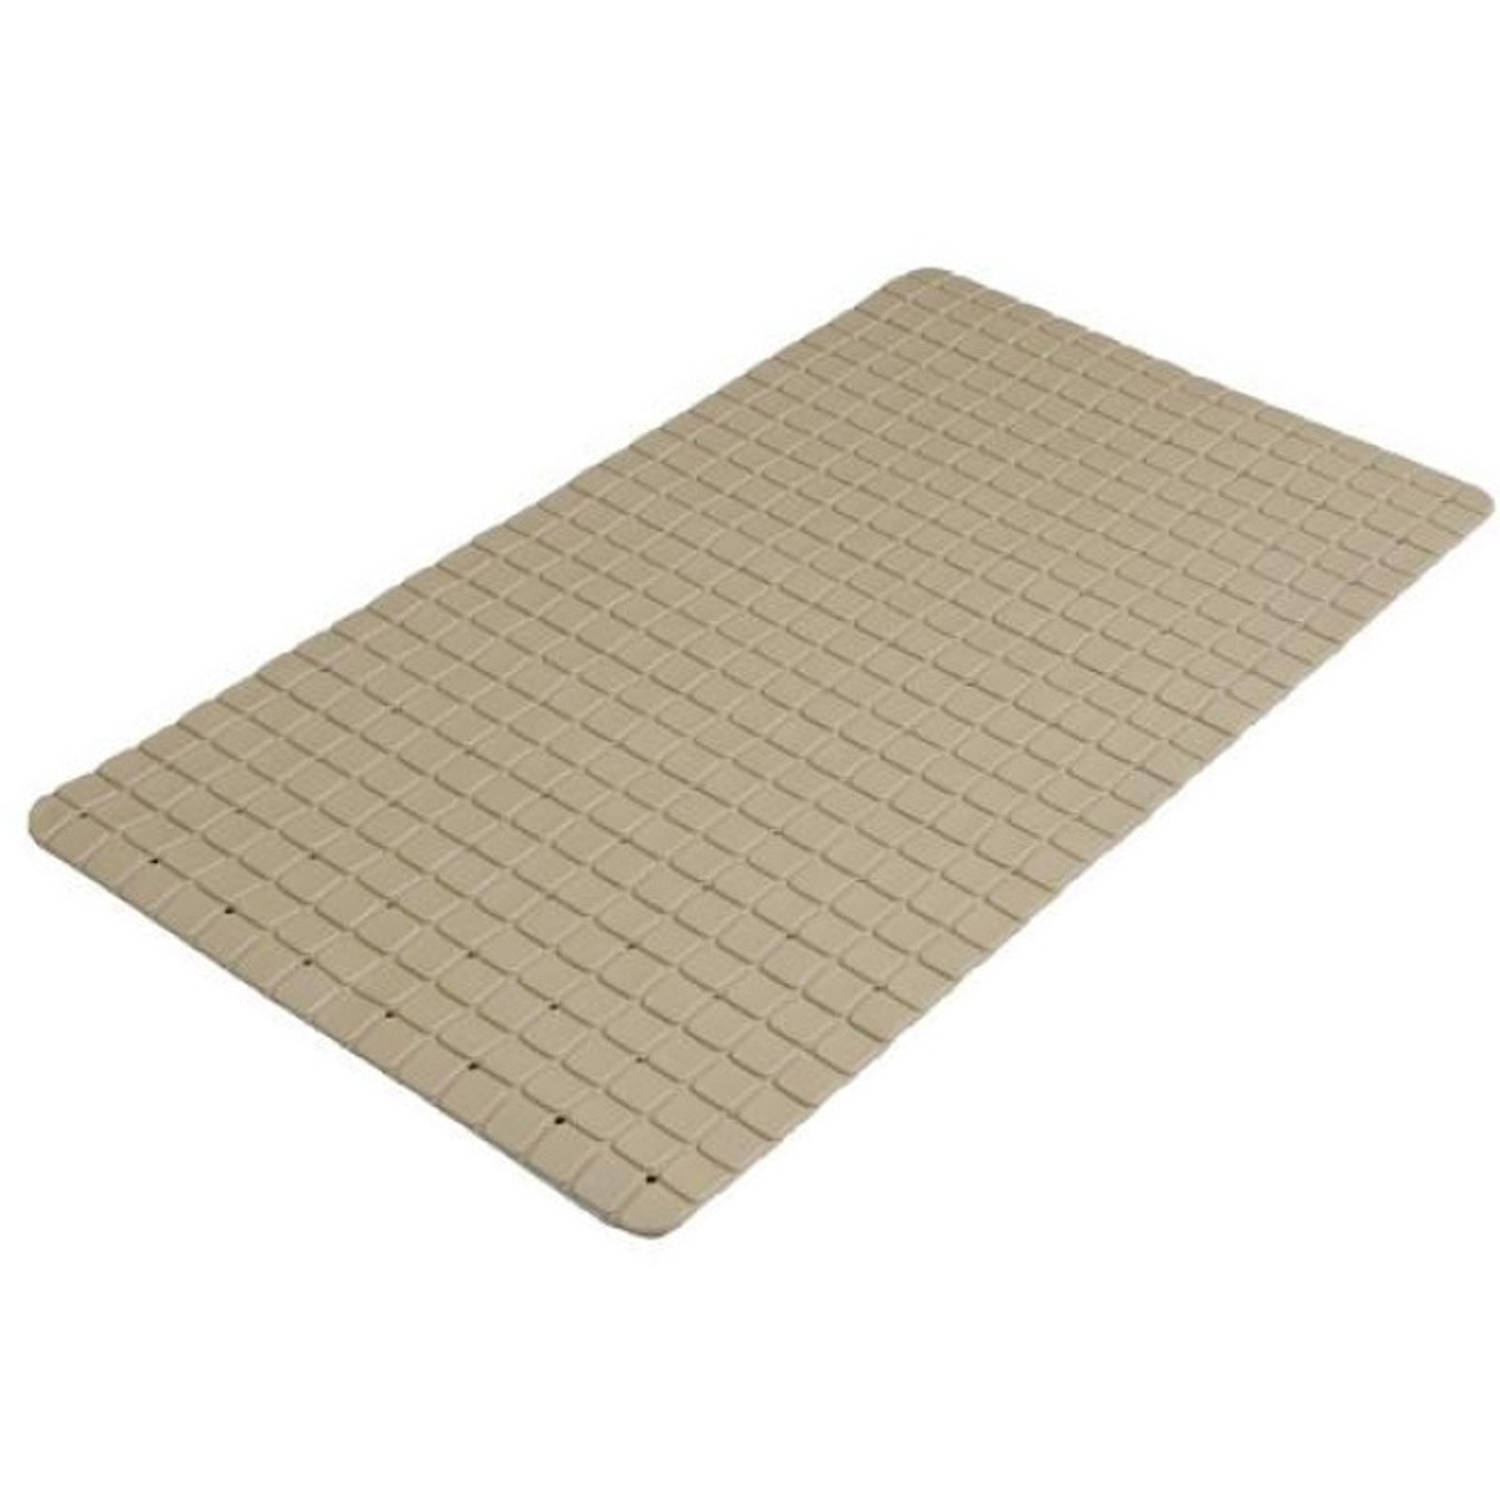 Urban Living Badkamer-douche anti slip mat rubber voor op de vloer beige 39 x 69 cm Badmatjes